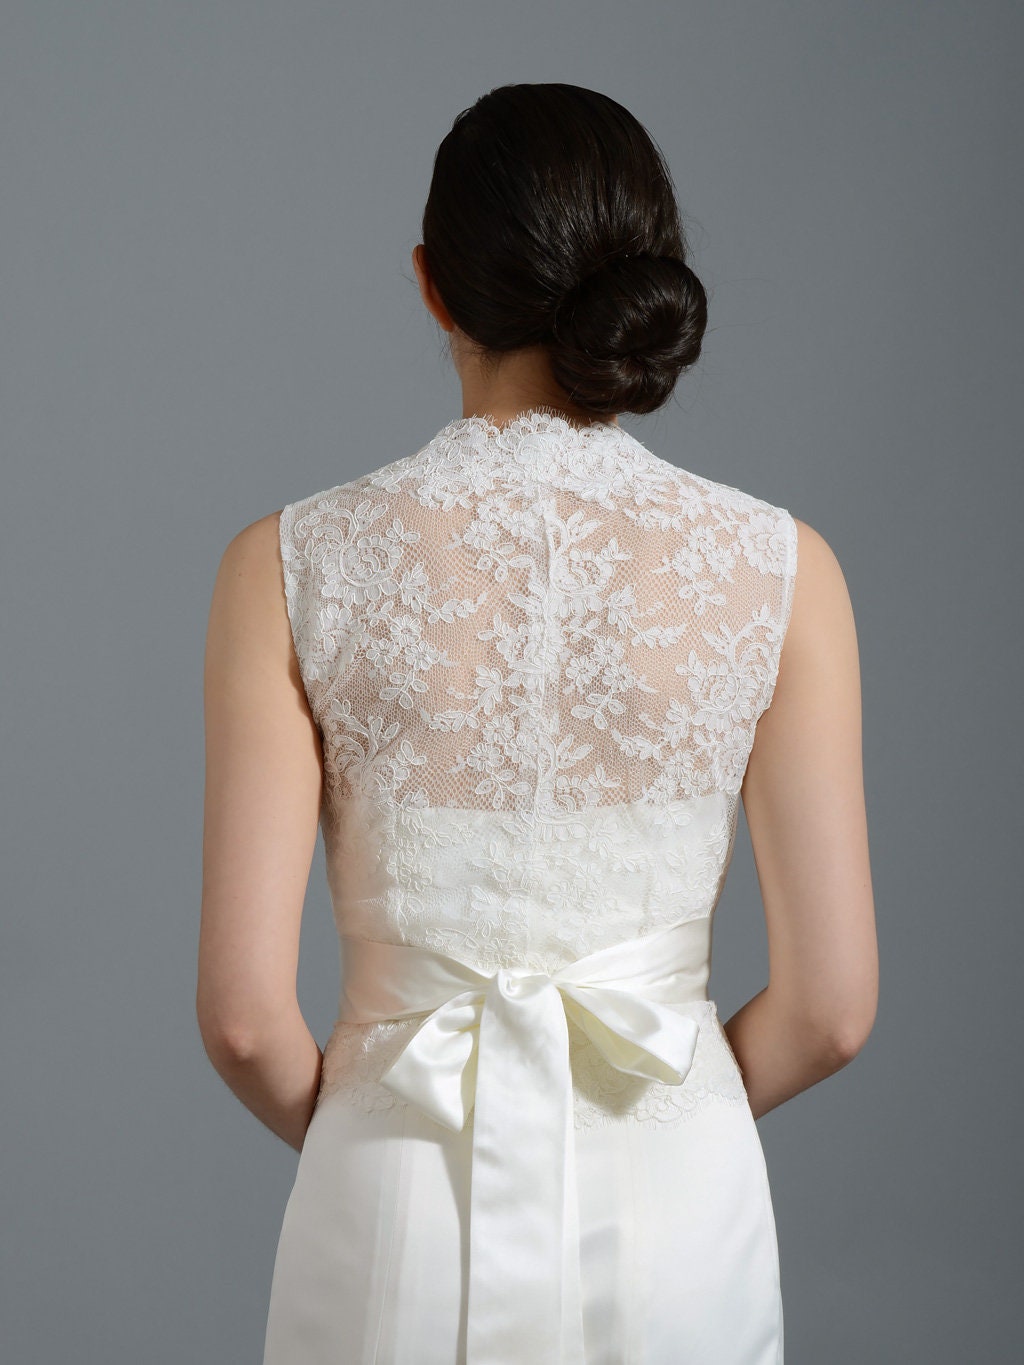 Ivory Lace jacket Bridal Bolero Wedding jacket wedding bolero sleeveless alencon lace